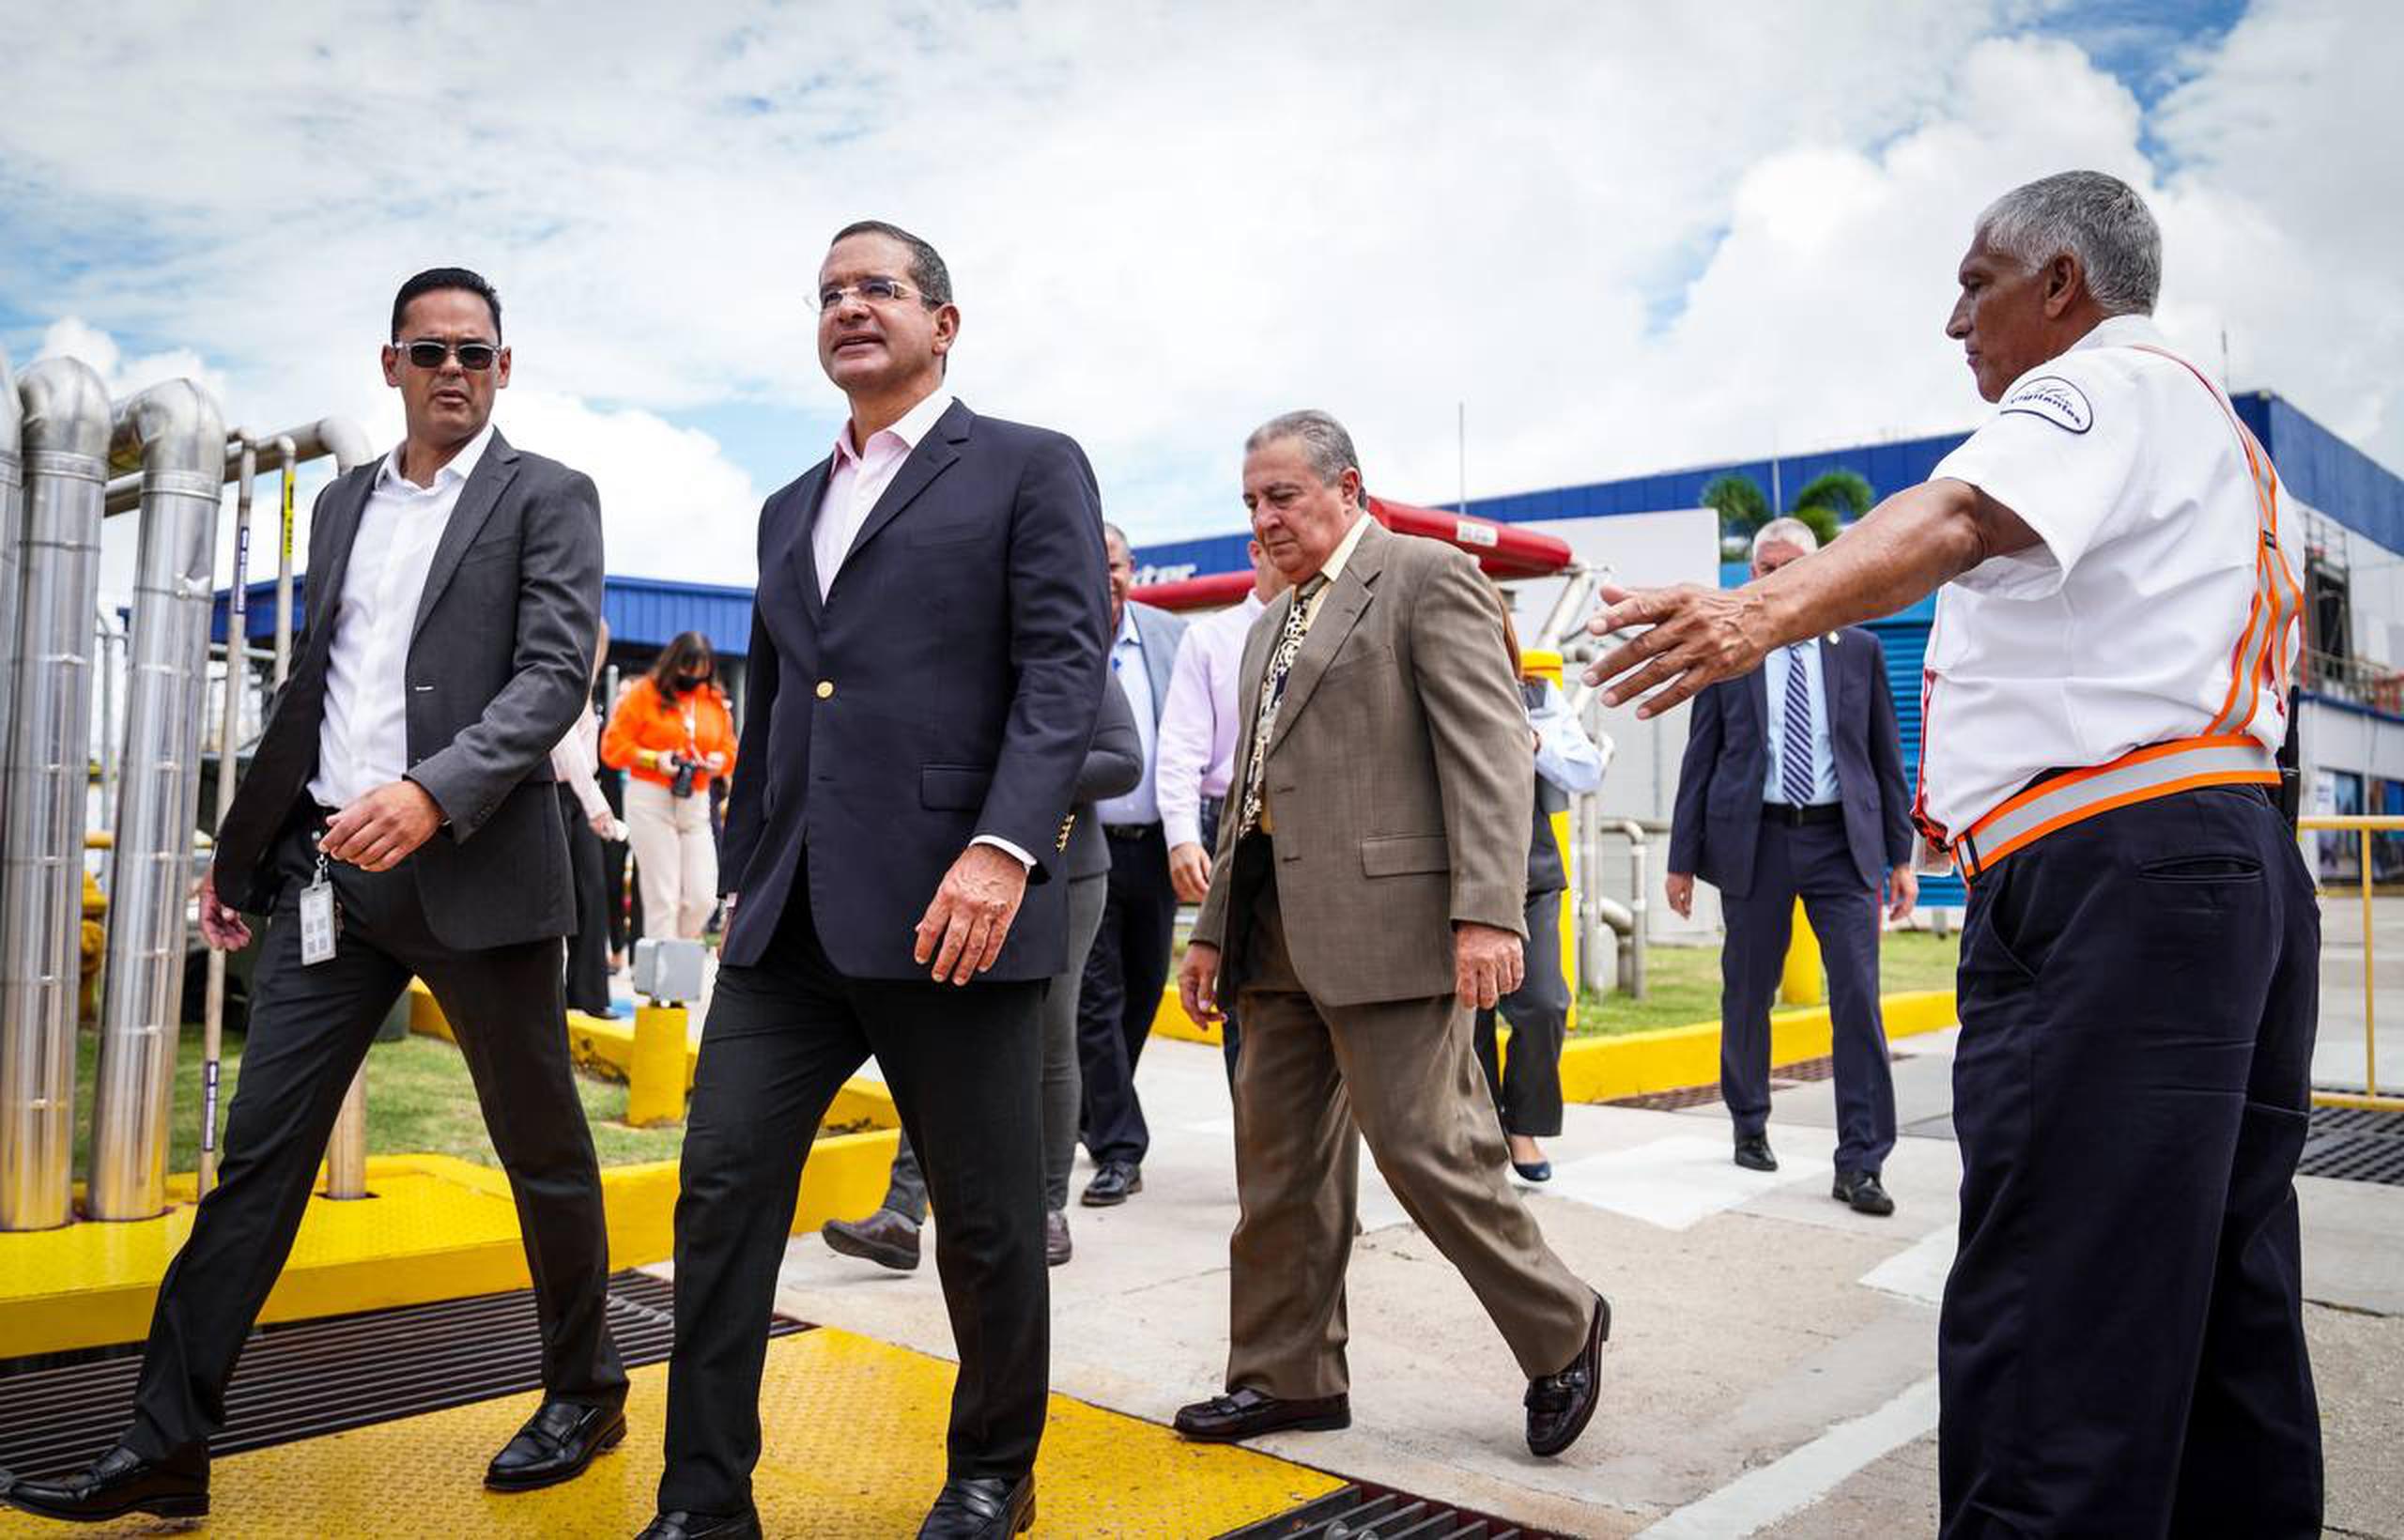 Gobernador Pedro Pierluisi participa de anuncio sobre inversión de $30 millones en instalaciones de Baxter en Aibonito para sistema de cogeneración energética con gas natural.